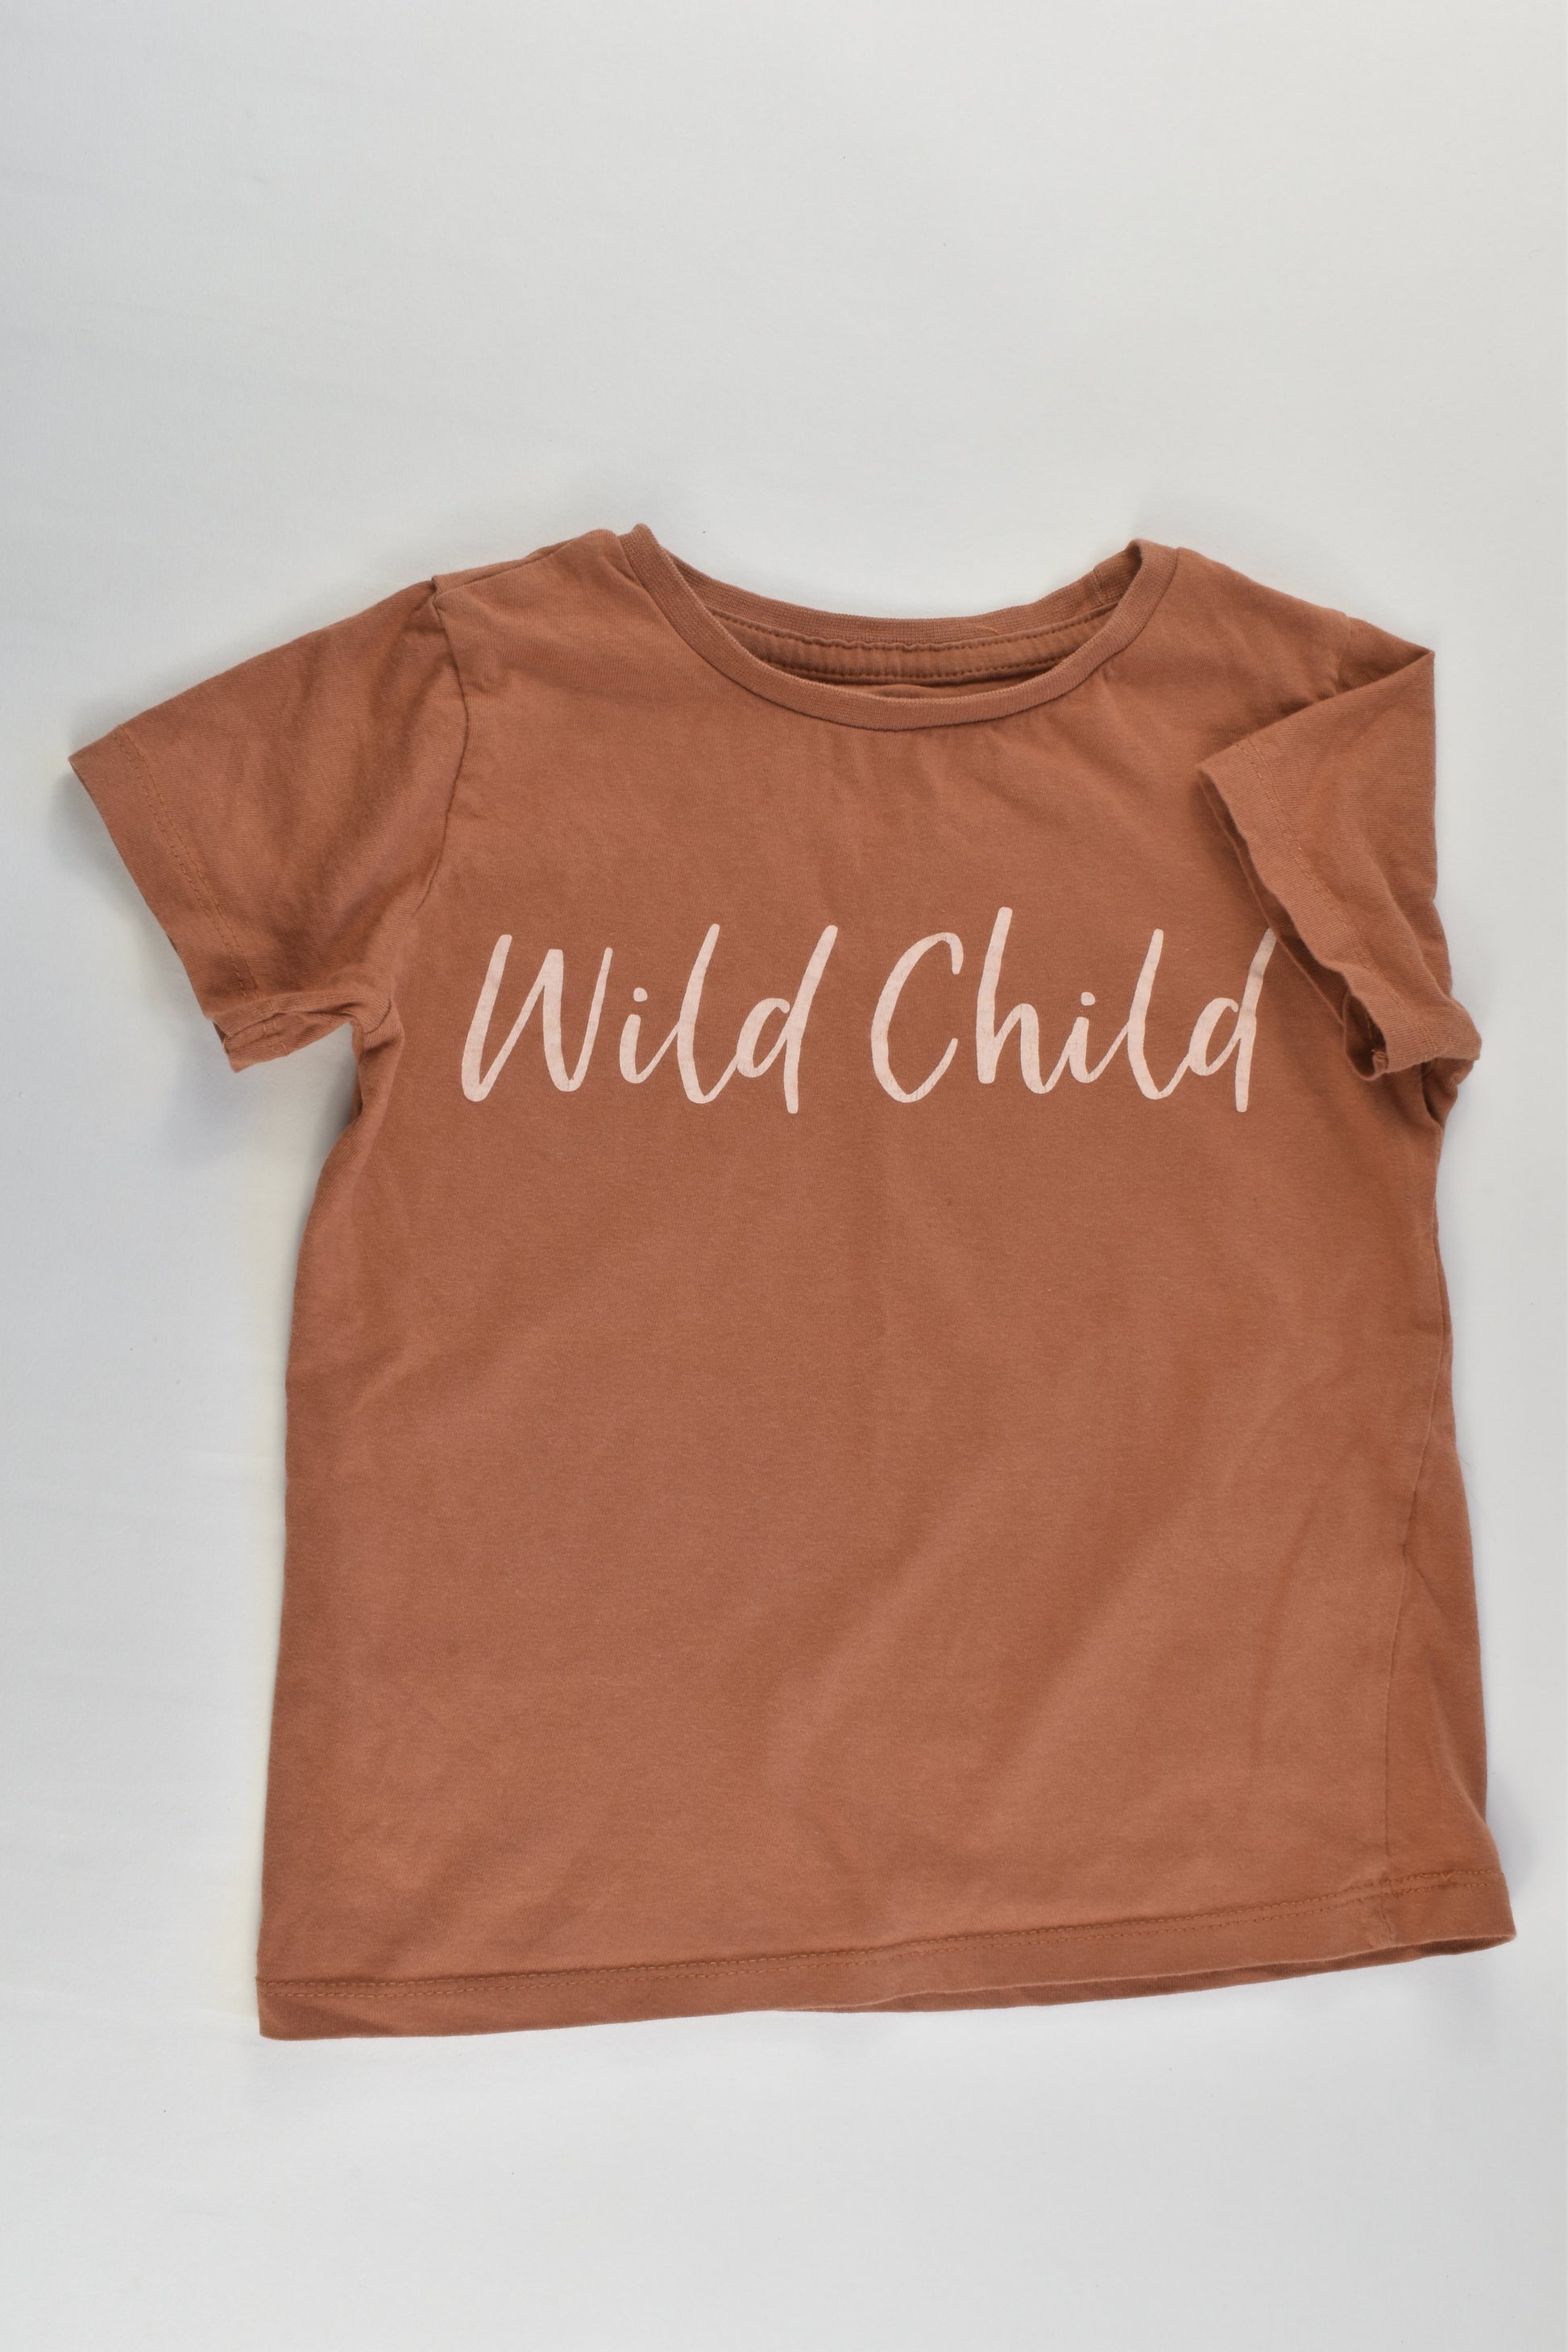 Cotton On Kids Size 4 'Wild Child' T-shirt